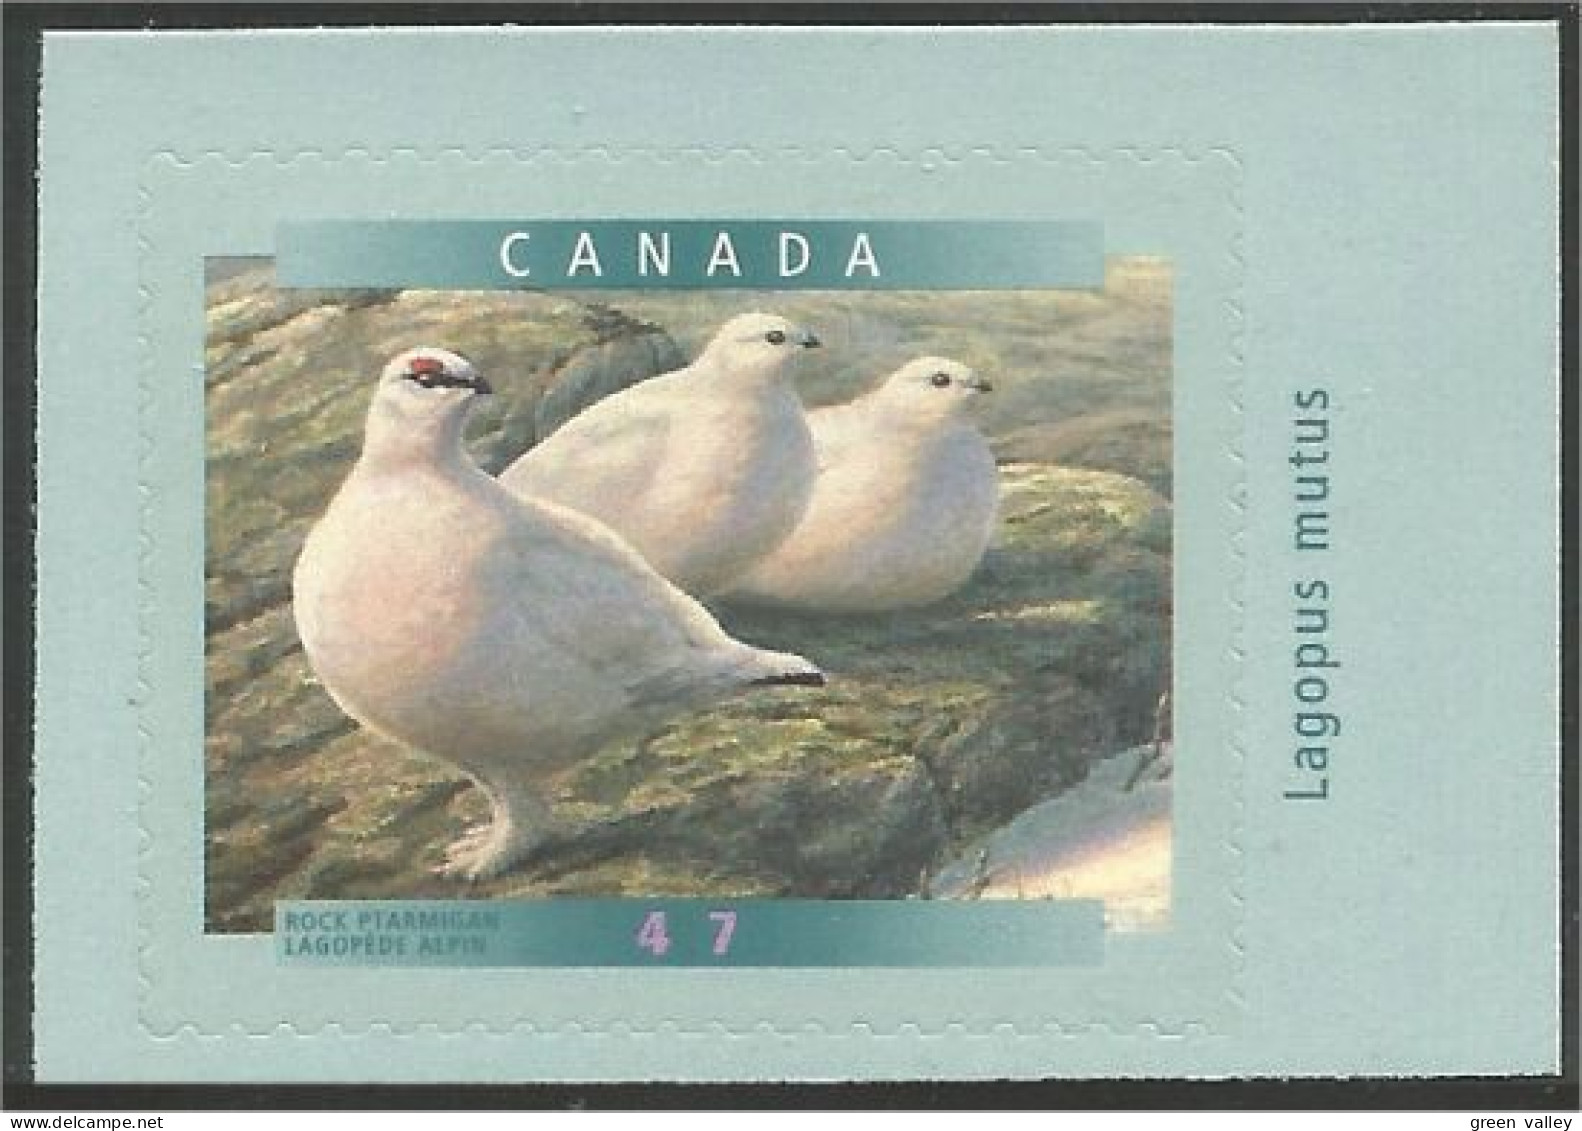 Canada Rock Ptarmigan Lagopede MNH ** Neuf SC (C18-92da) - Unused Stamps